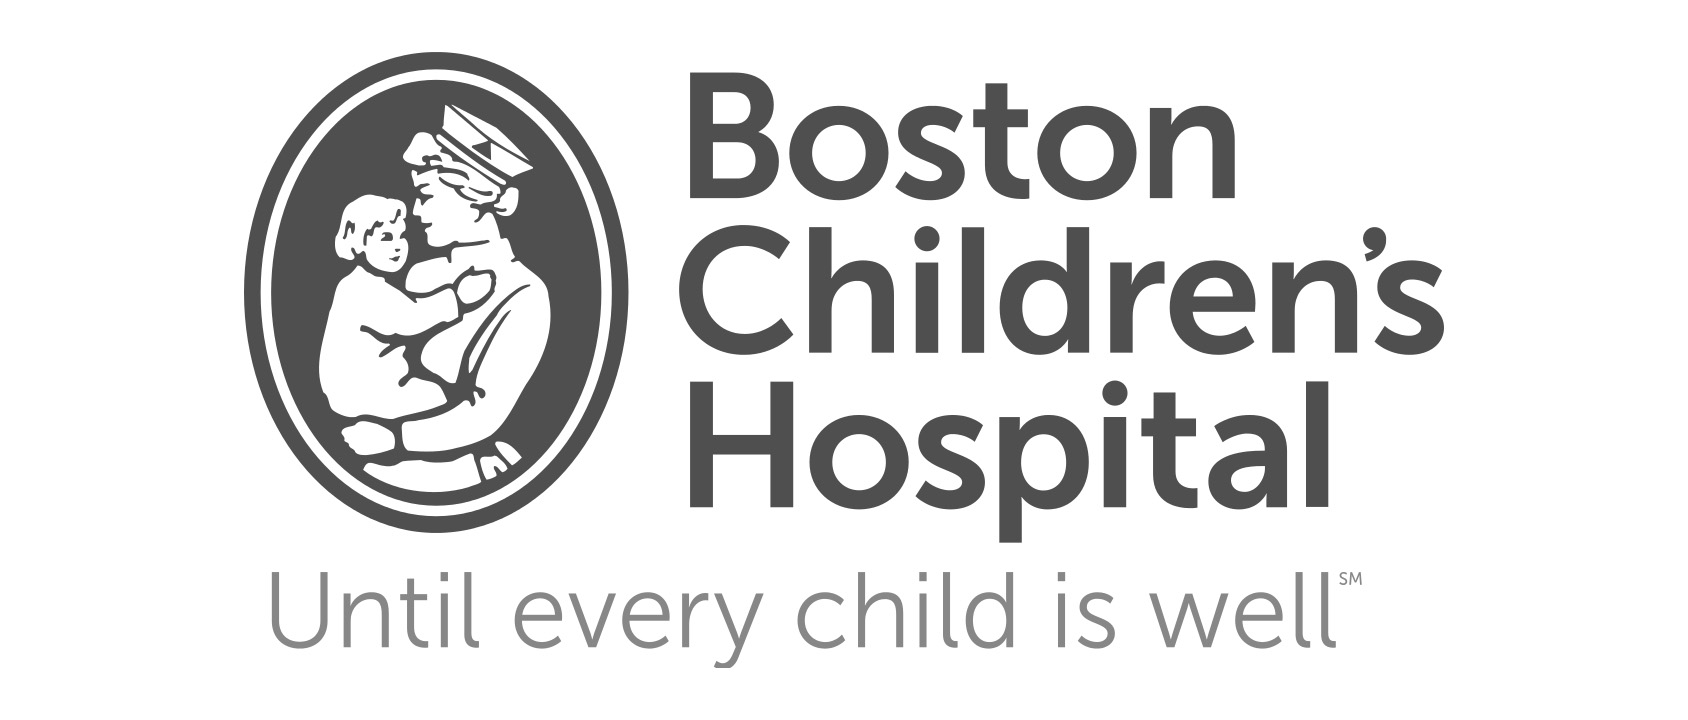 Boston_Children's_Hospital_logo.svg copy.jpg